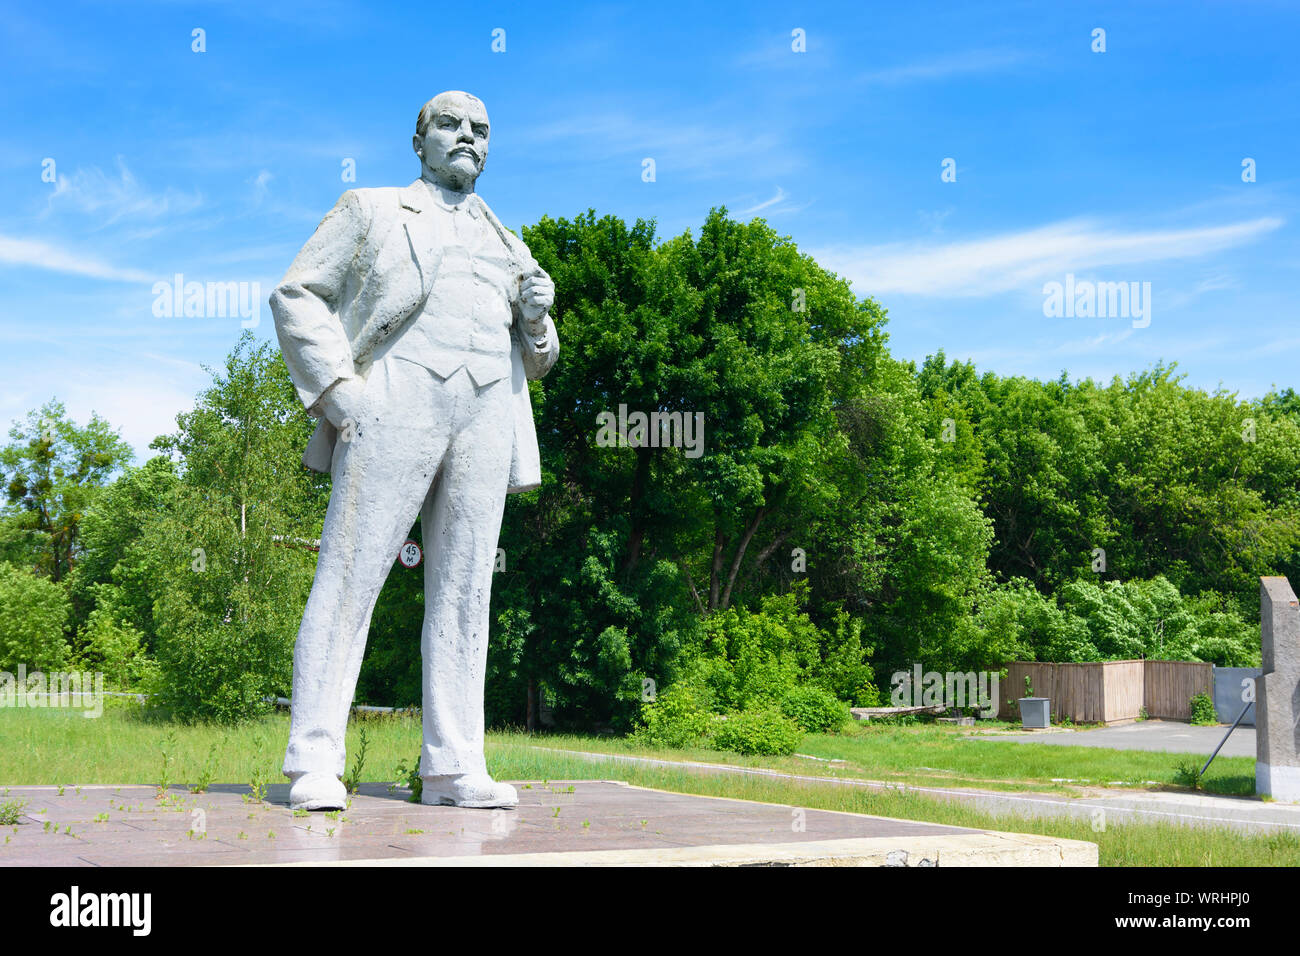 Chernobyl (Chornobyl): Lenin monument in Chernobyl (Chornobyl) Exclusion Zone, Kiev Oblast, Ukraine Stock Photo